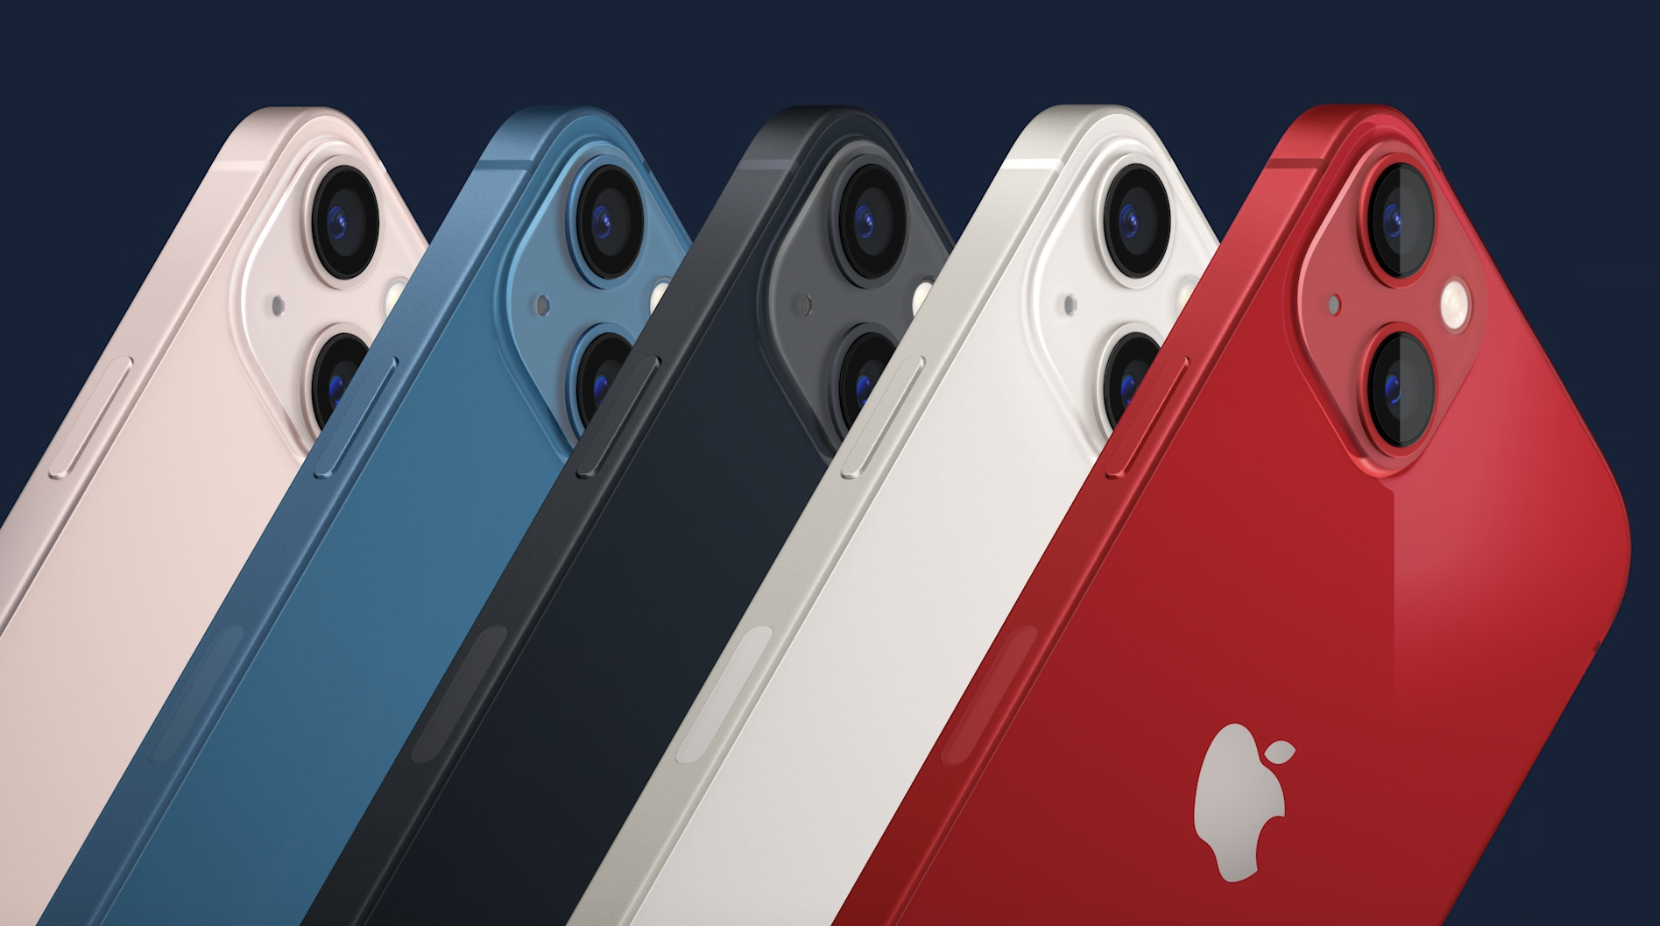 iPhone 13 series chính thức ra mắt, giá dự kiến bình ổn khi về Việt Nam sẽ từ 21.99 triệu